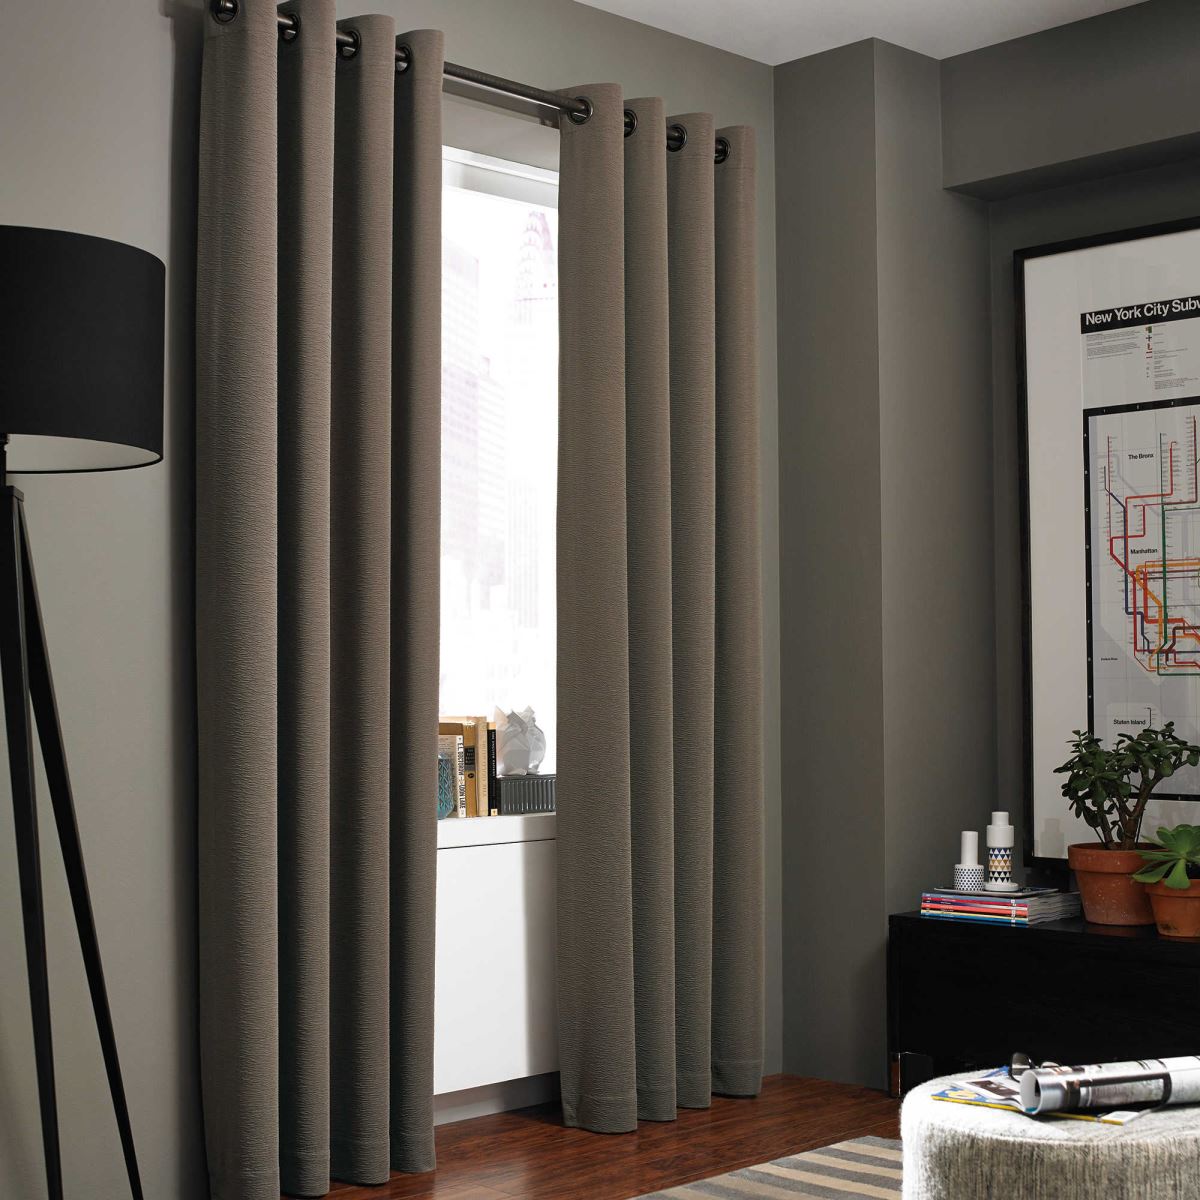 Căn phòng của bạn trở nên mát mẻ hơn, dễ chịu hơn và có sức sống hơn với rèm vải